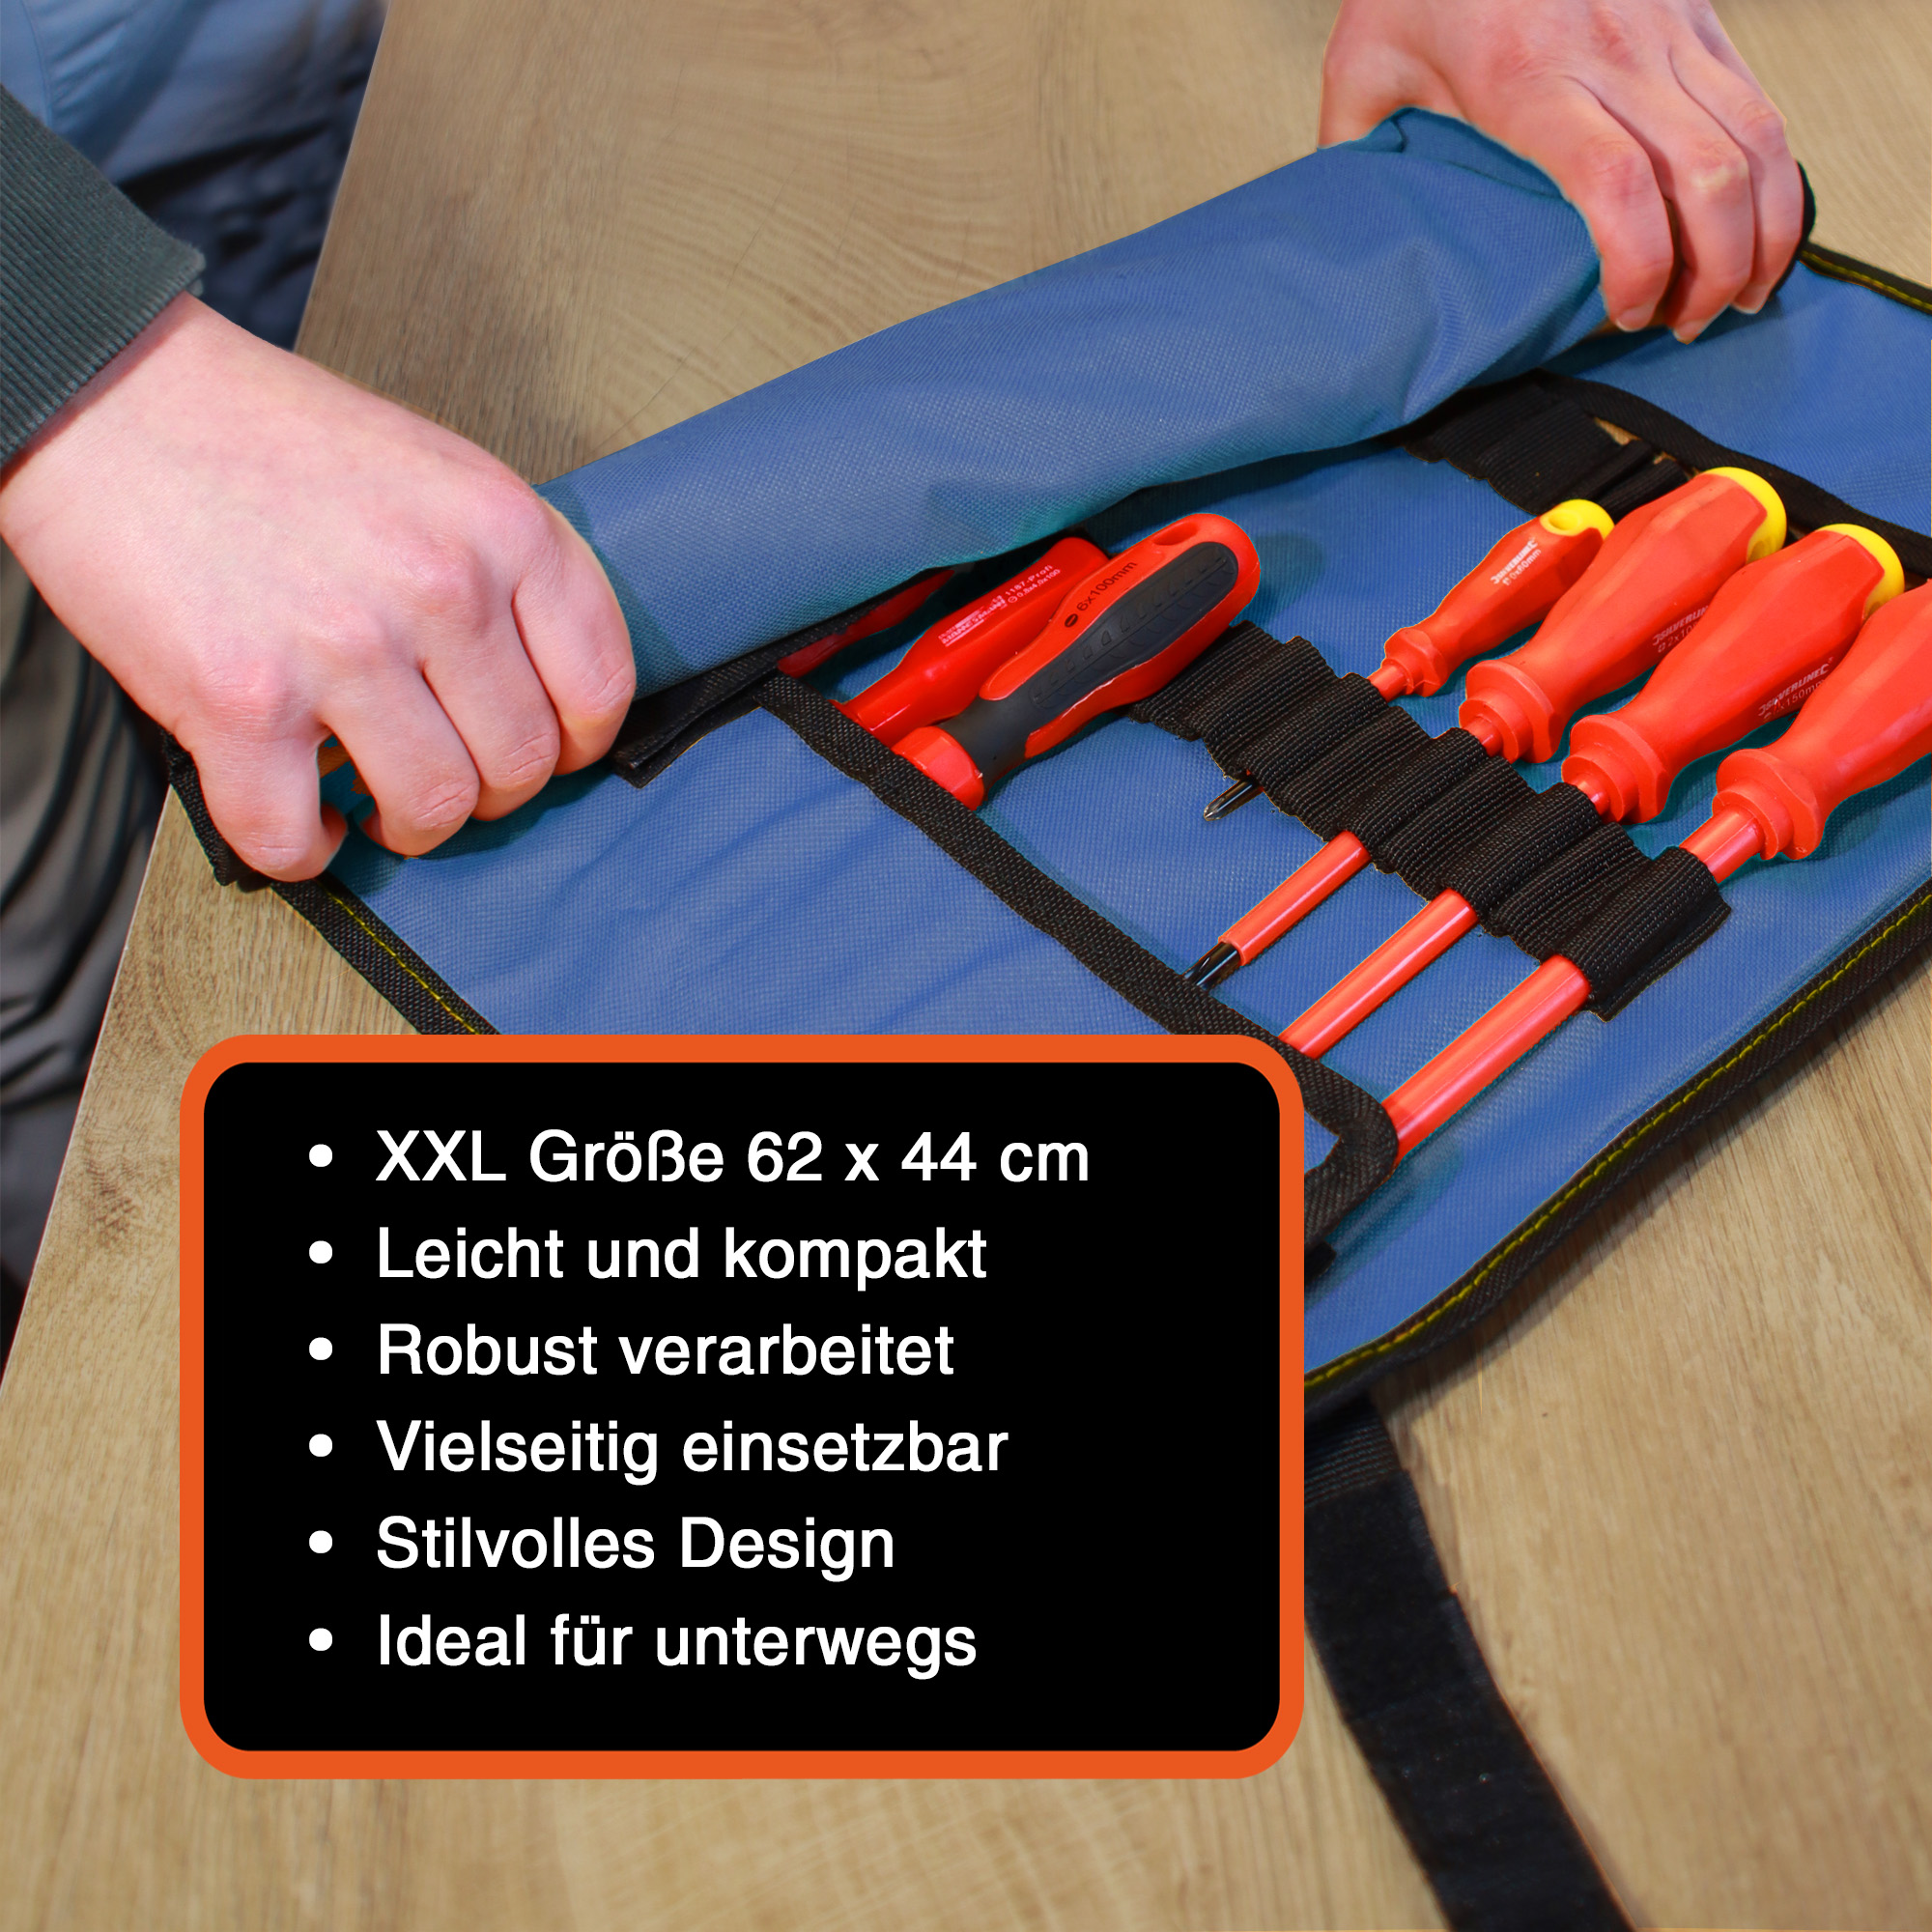 "VarioRoll XXL" Werkzeug Rolltasche 62x44cm, Netztasche und 60 Halteschlaufen, Blau-Schwarz